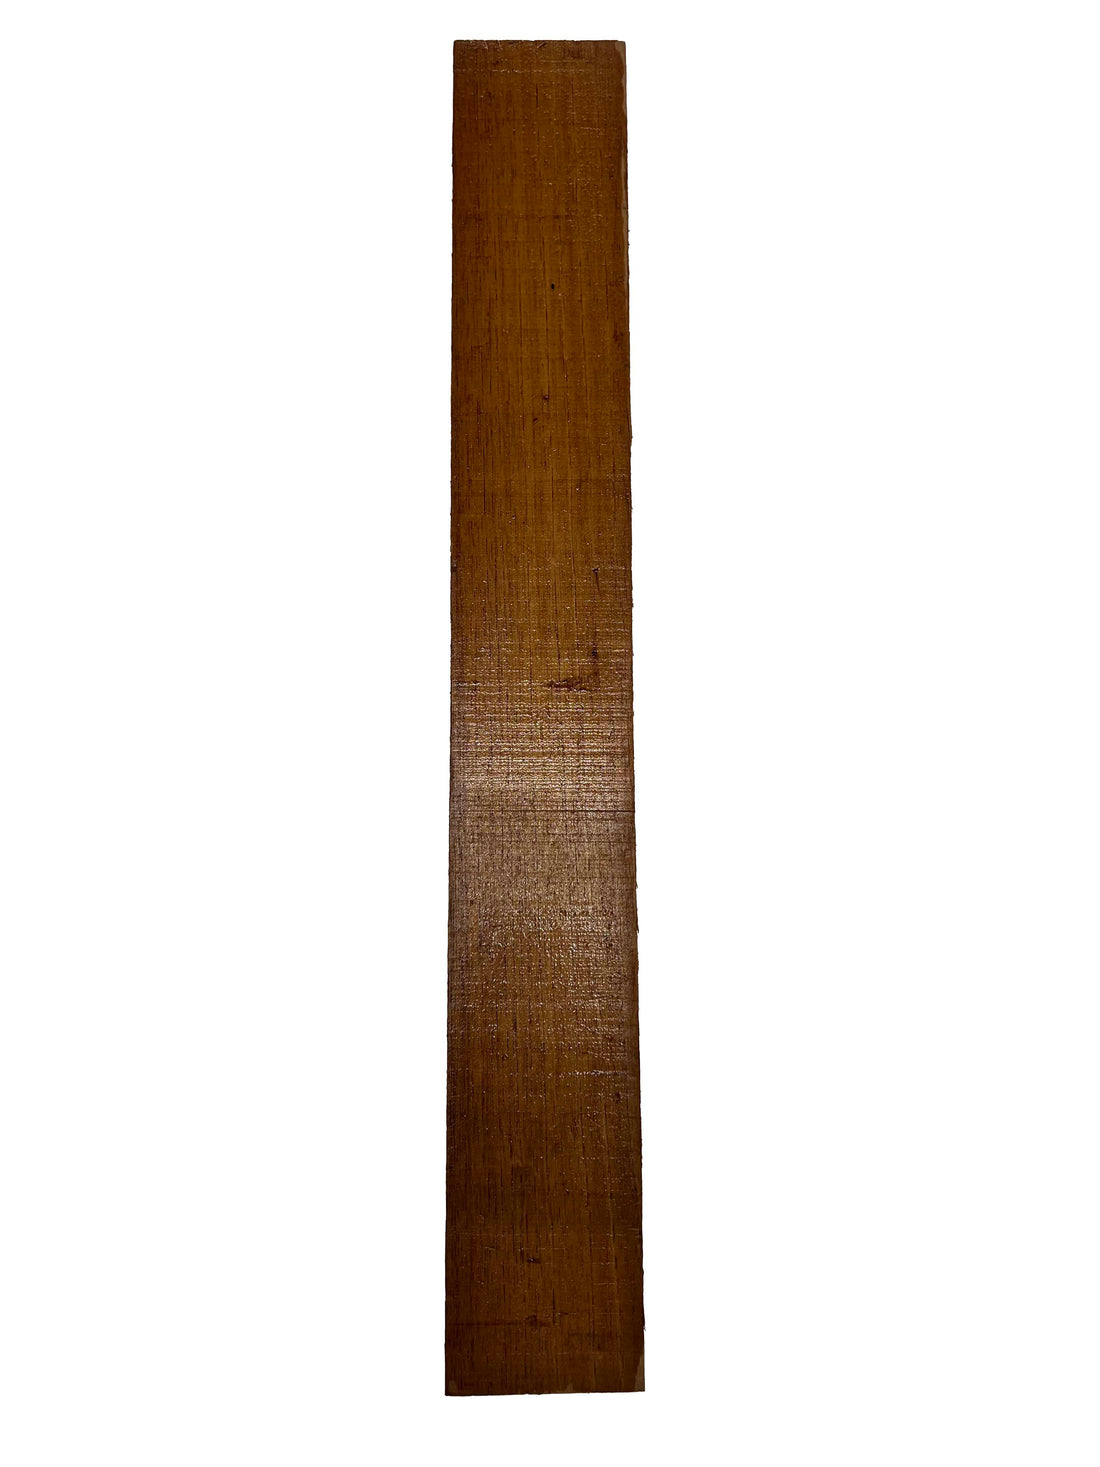 Spanish Cedar Guitar Neck Luthier tonewood -24&quot;x3-3/8&quot;x1-1/4&quot; 